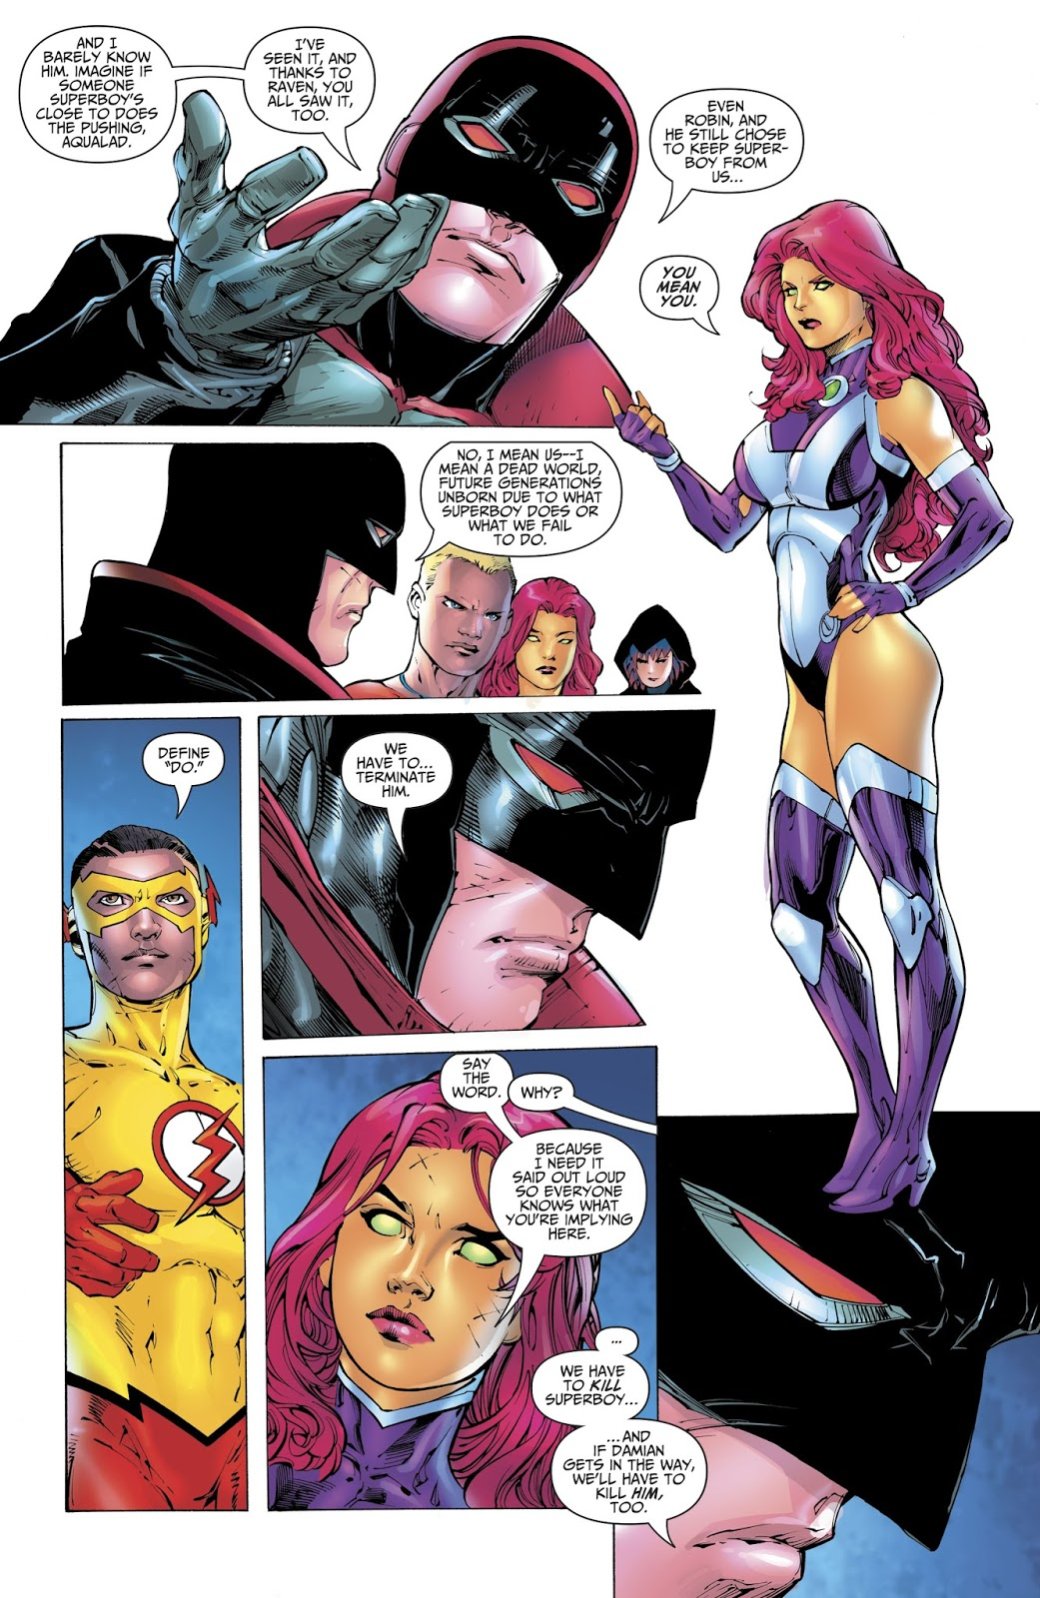 Галерея Все ненавидят Супербоя: почему Бэтмен из будущего хочет убить сына Супермена? - 2 фото